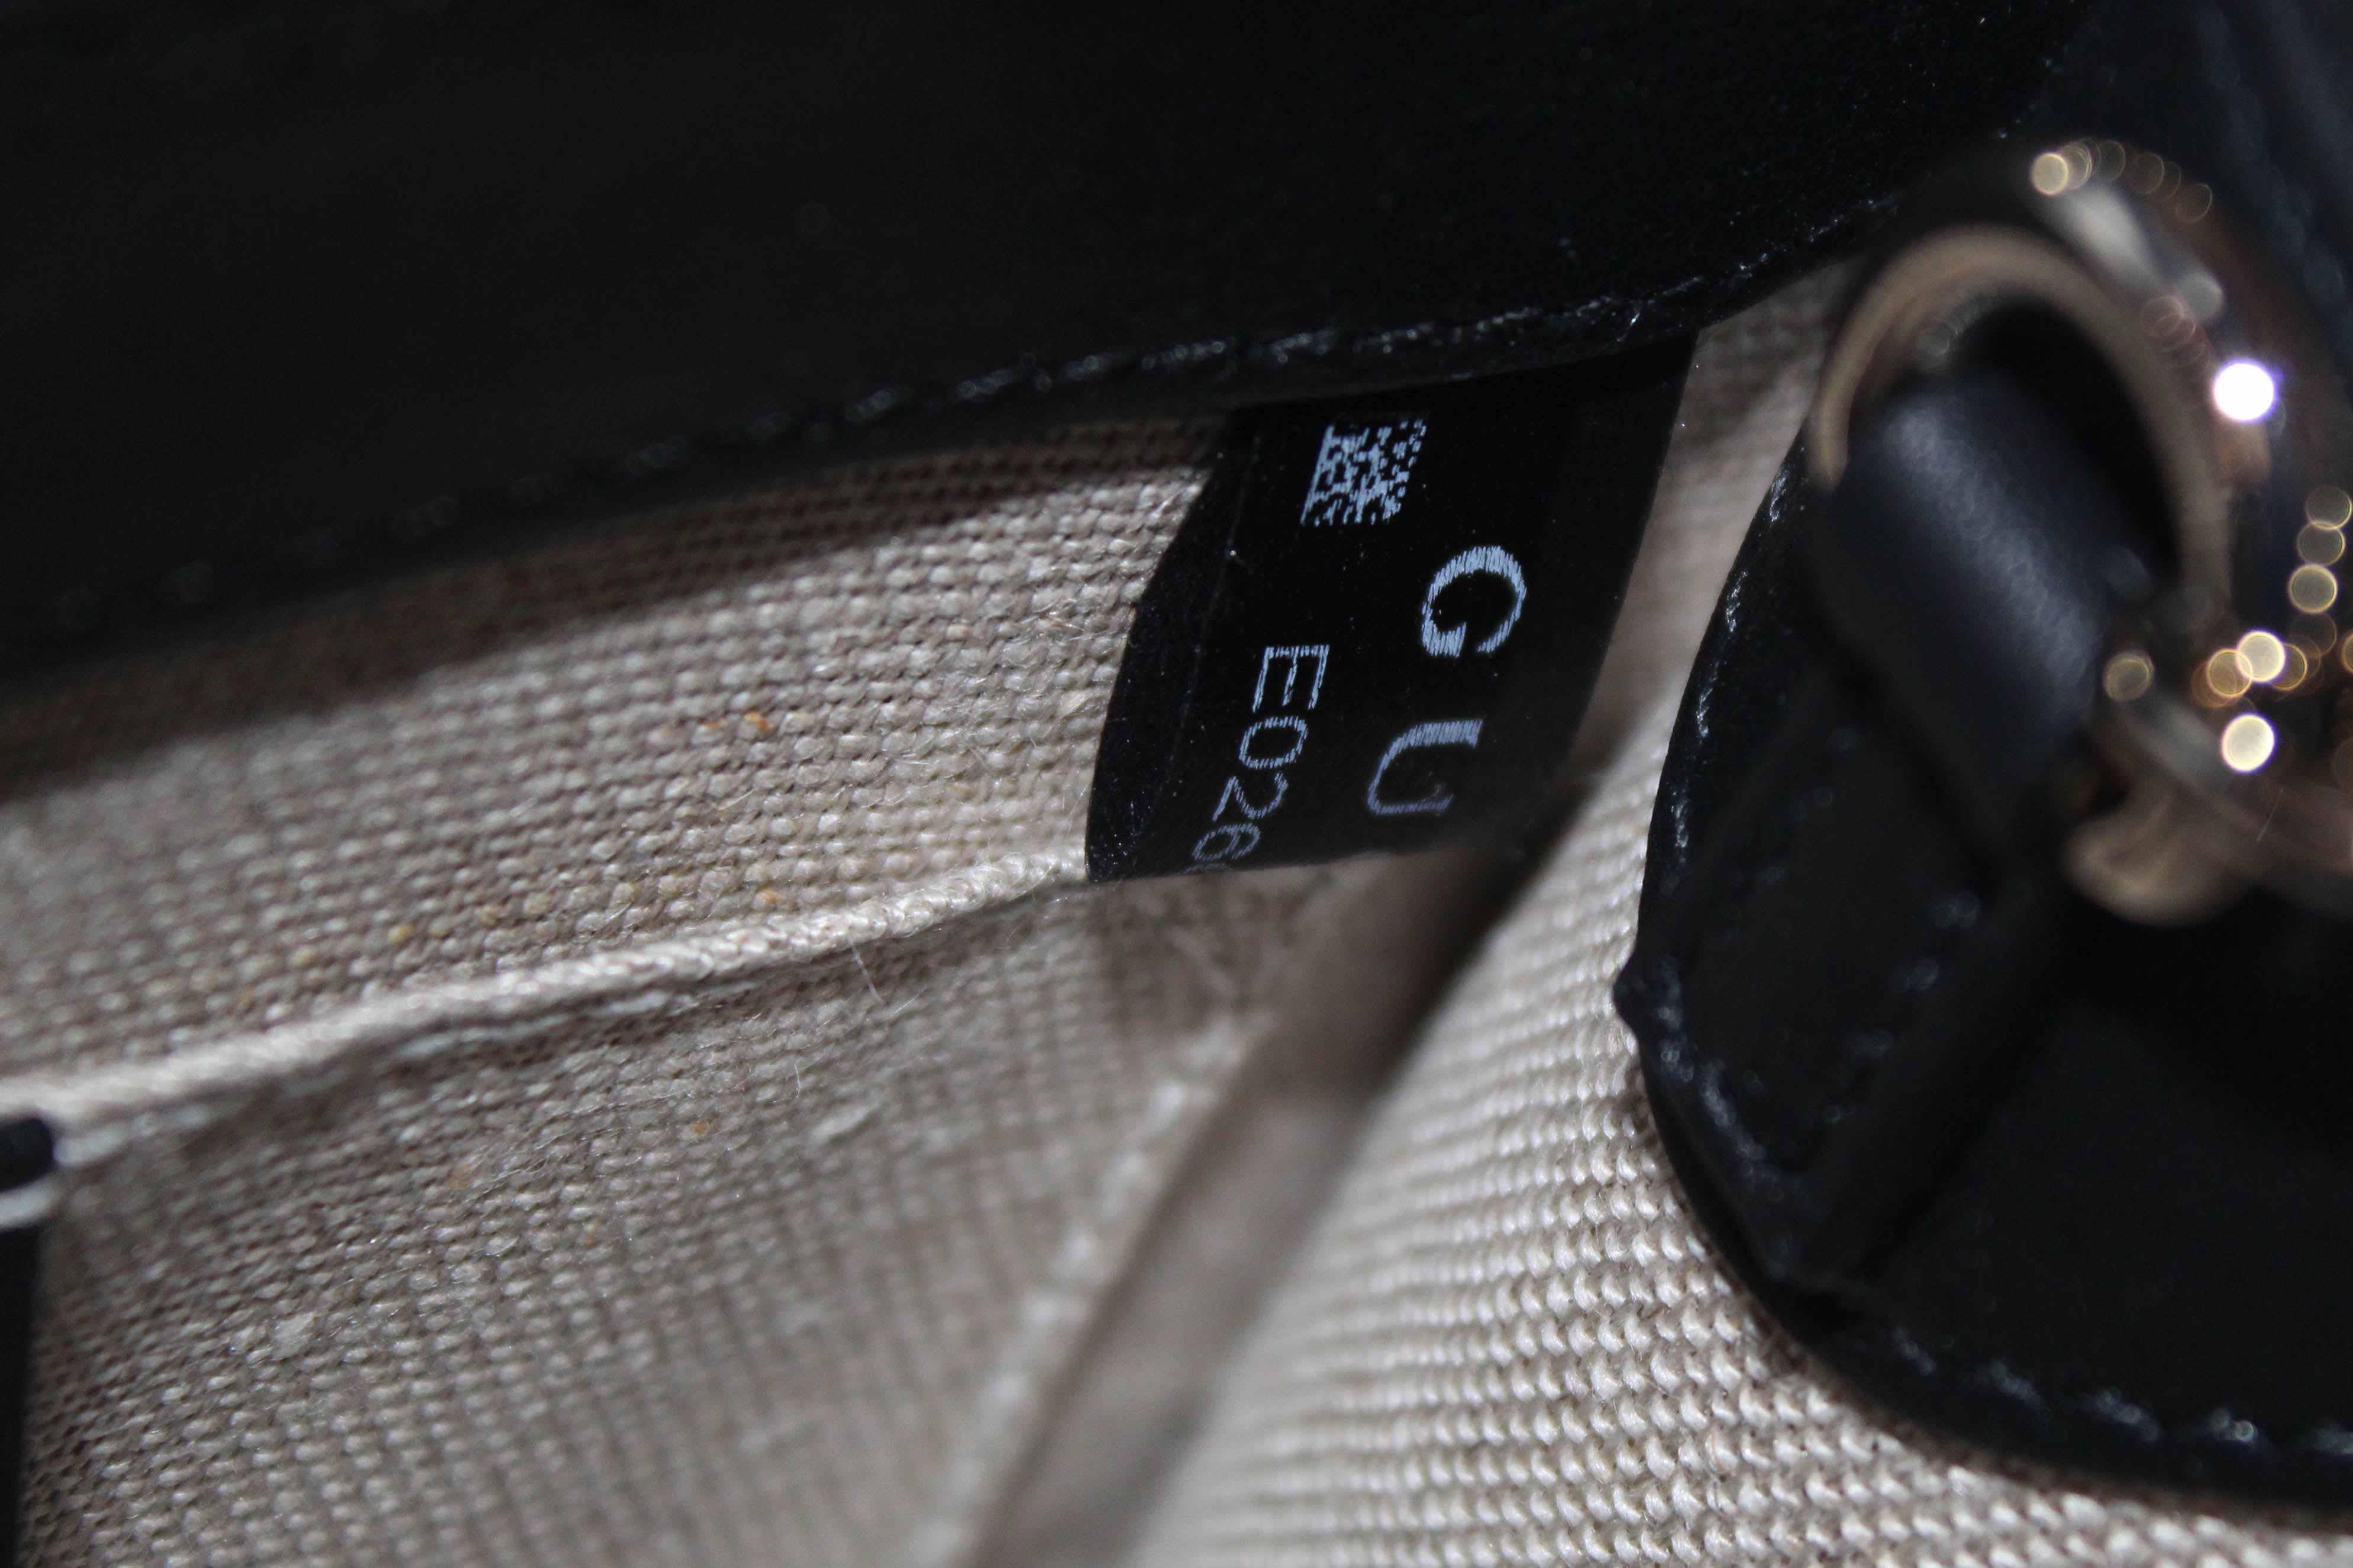 Authentic New Gucci Black Micro Guccissima Leather Mini Emily Shoulder Bag